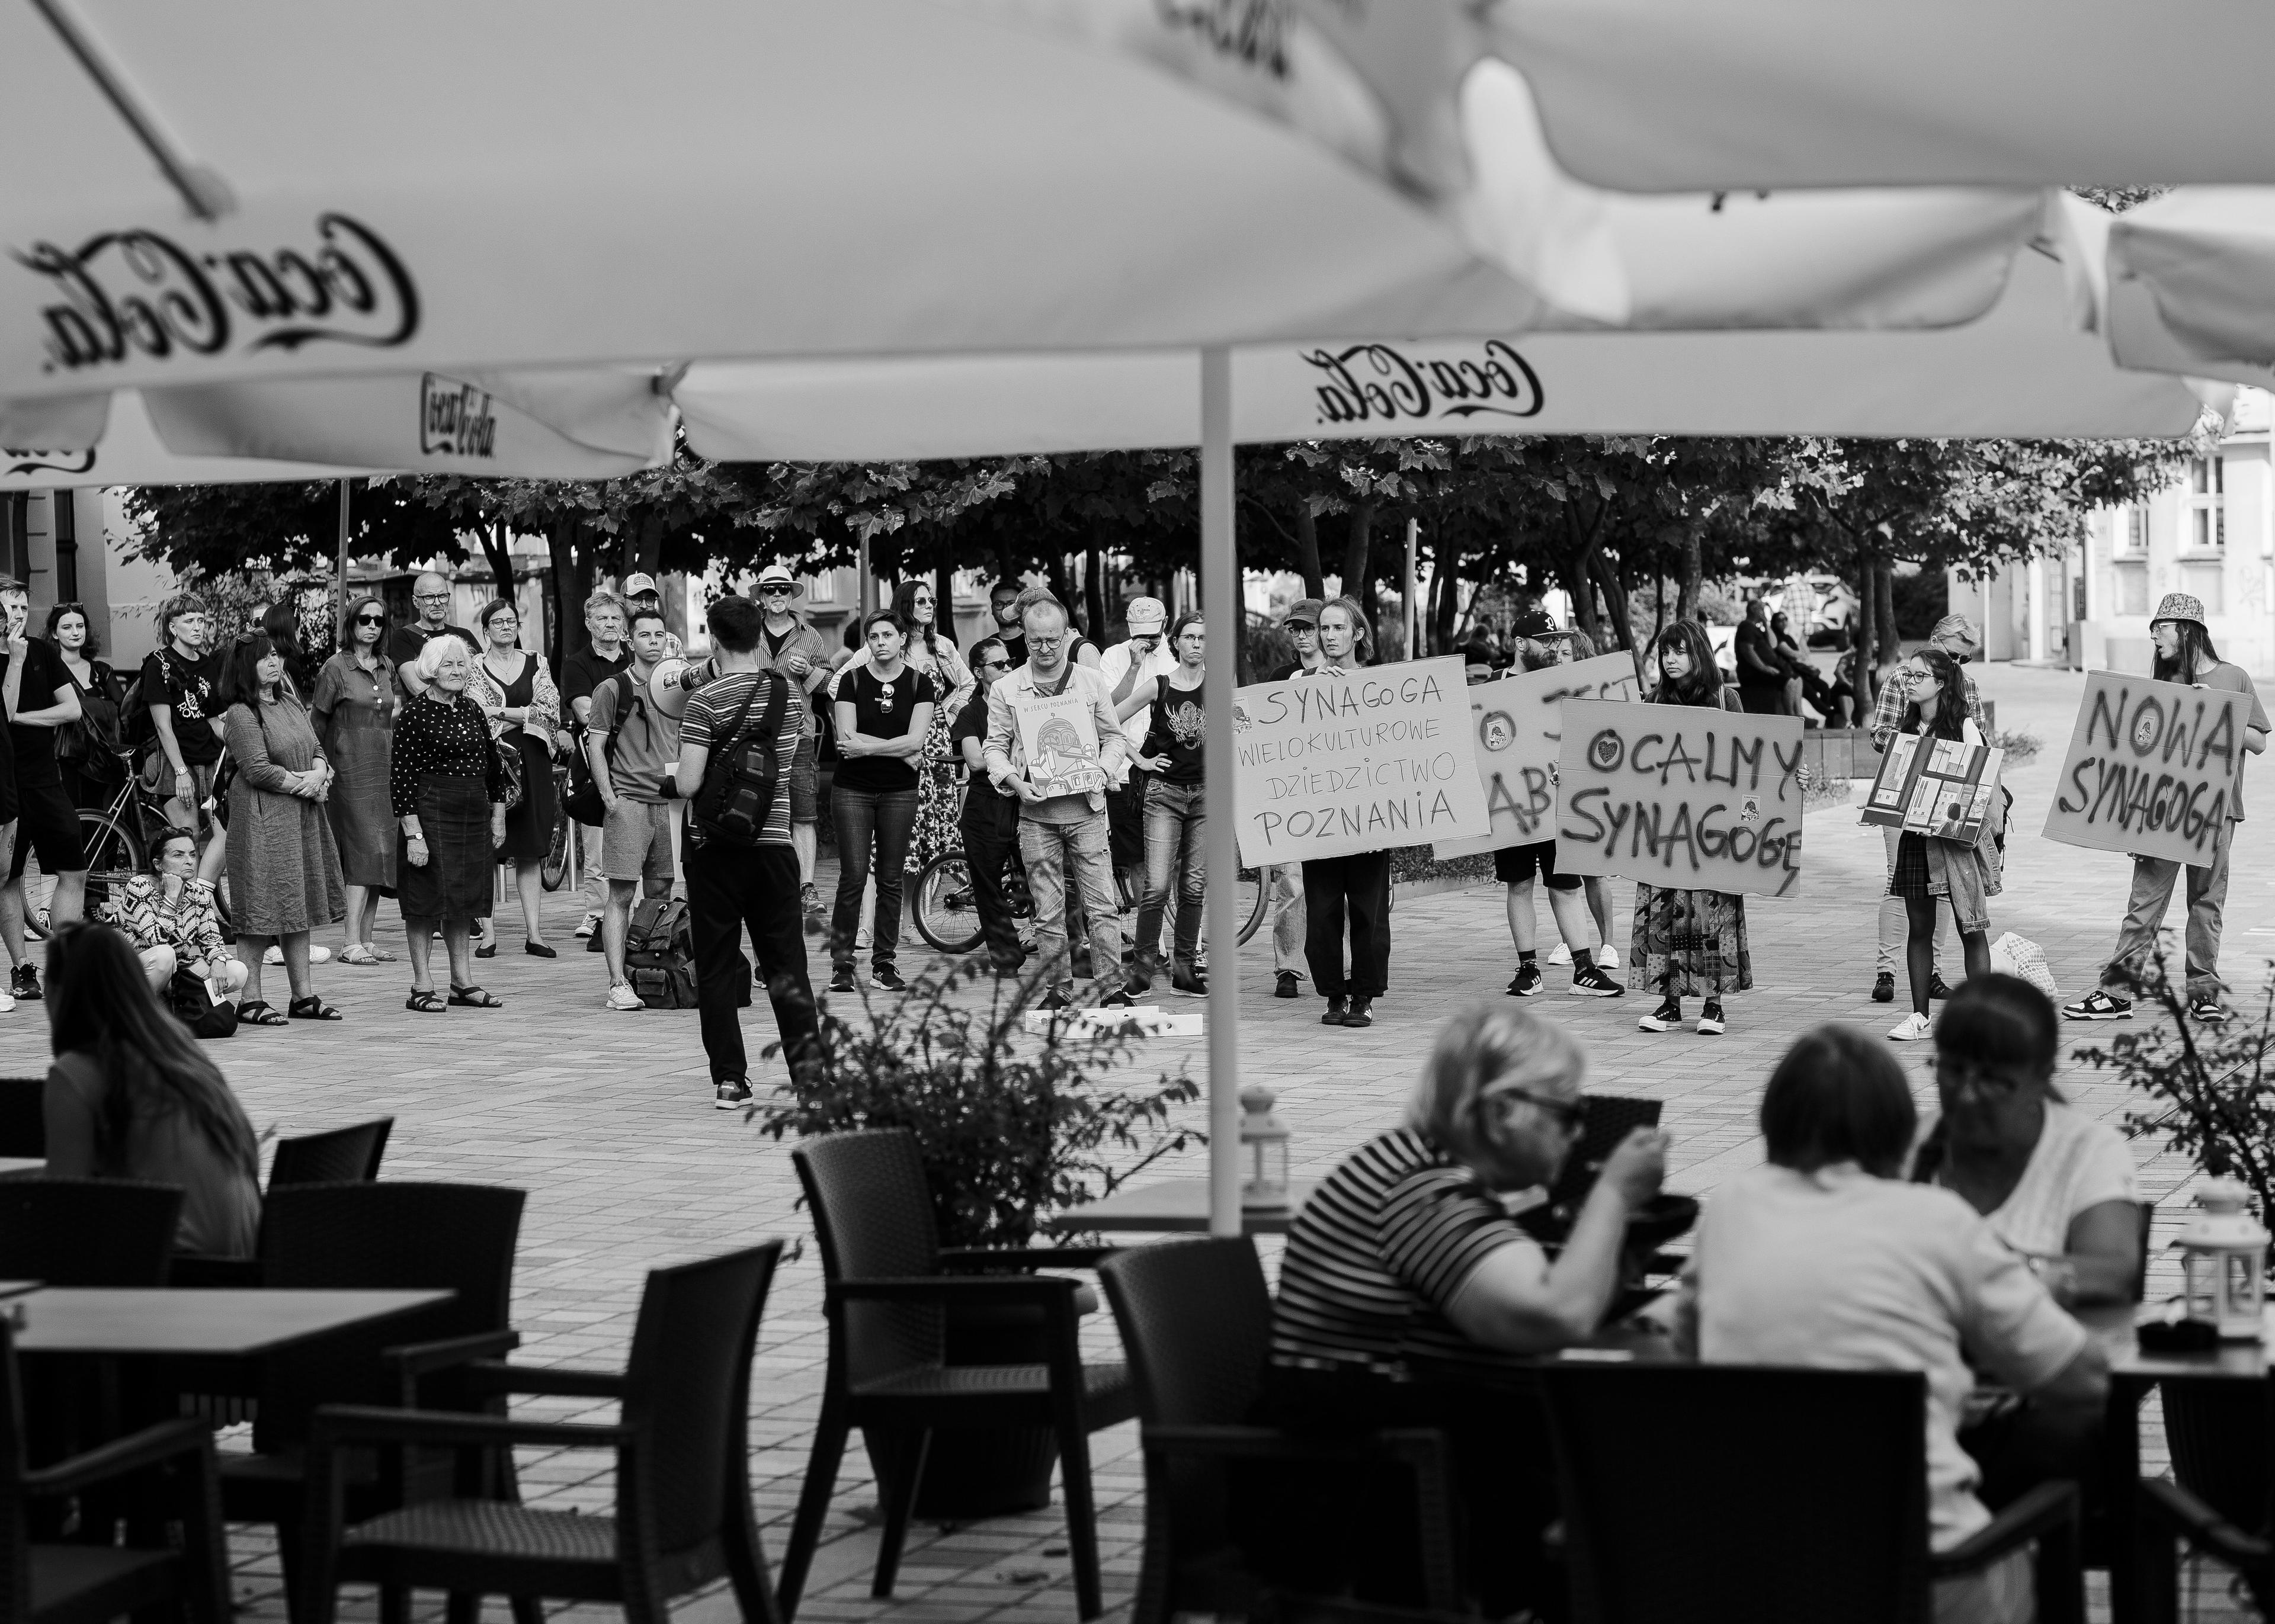 widok na manifestację uliczną spod parasoli ogródka miejskiej kawiarni. na parasolach napis cocacola, w głębi ludzie z hasłami w obronie poznańskiej synagogi